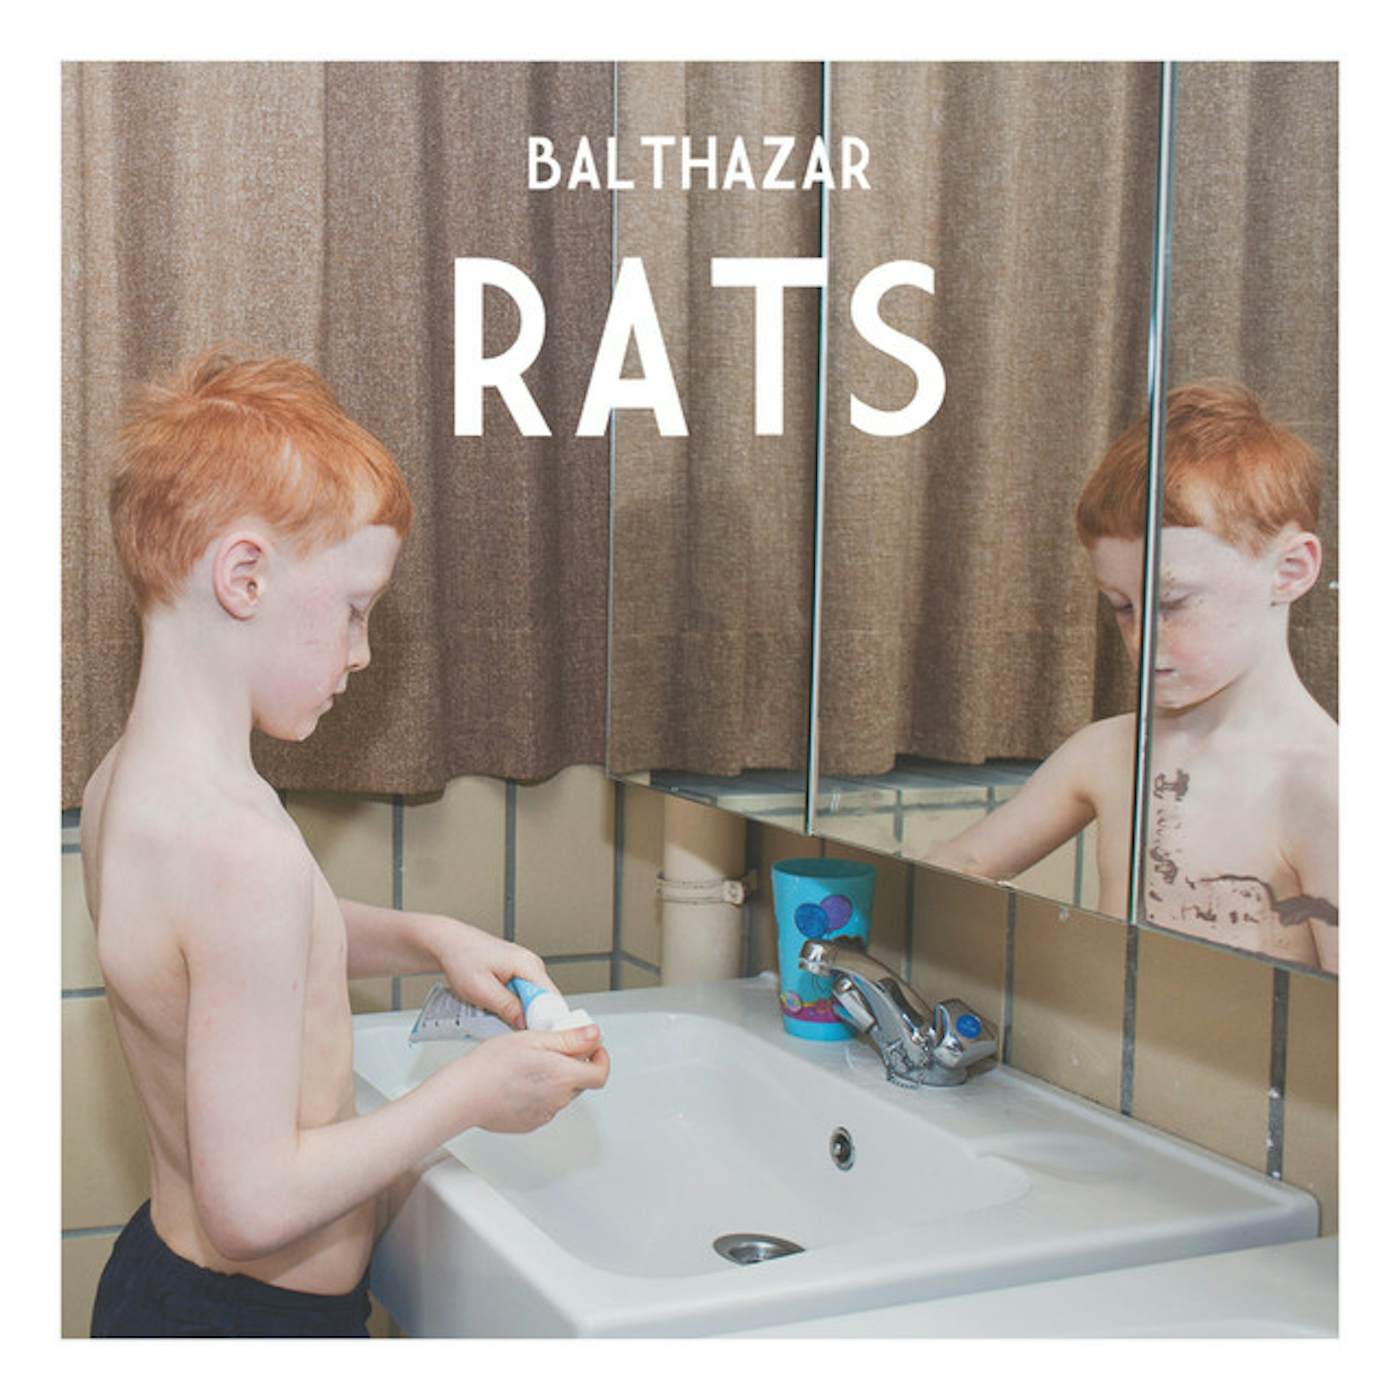 Balthazar Rats Vinyl Record